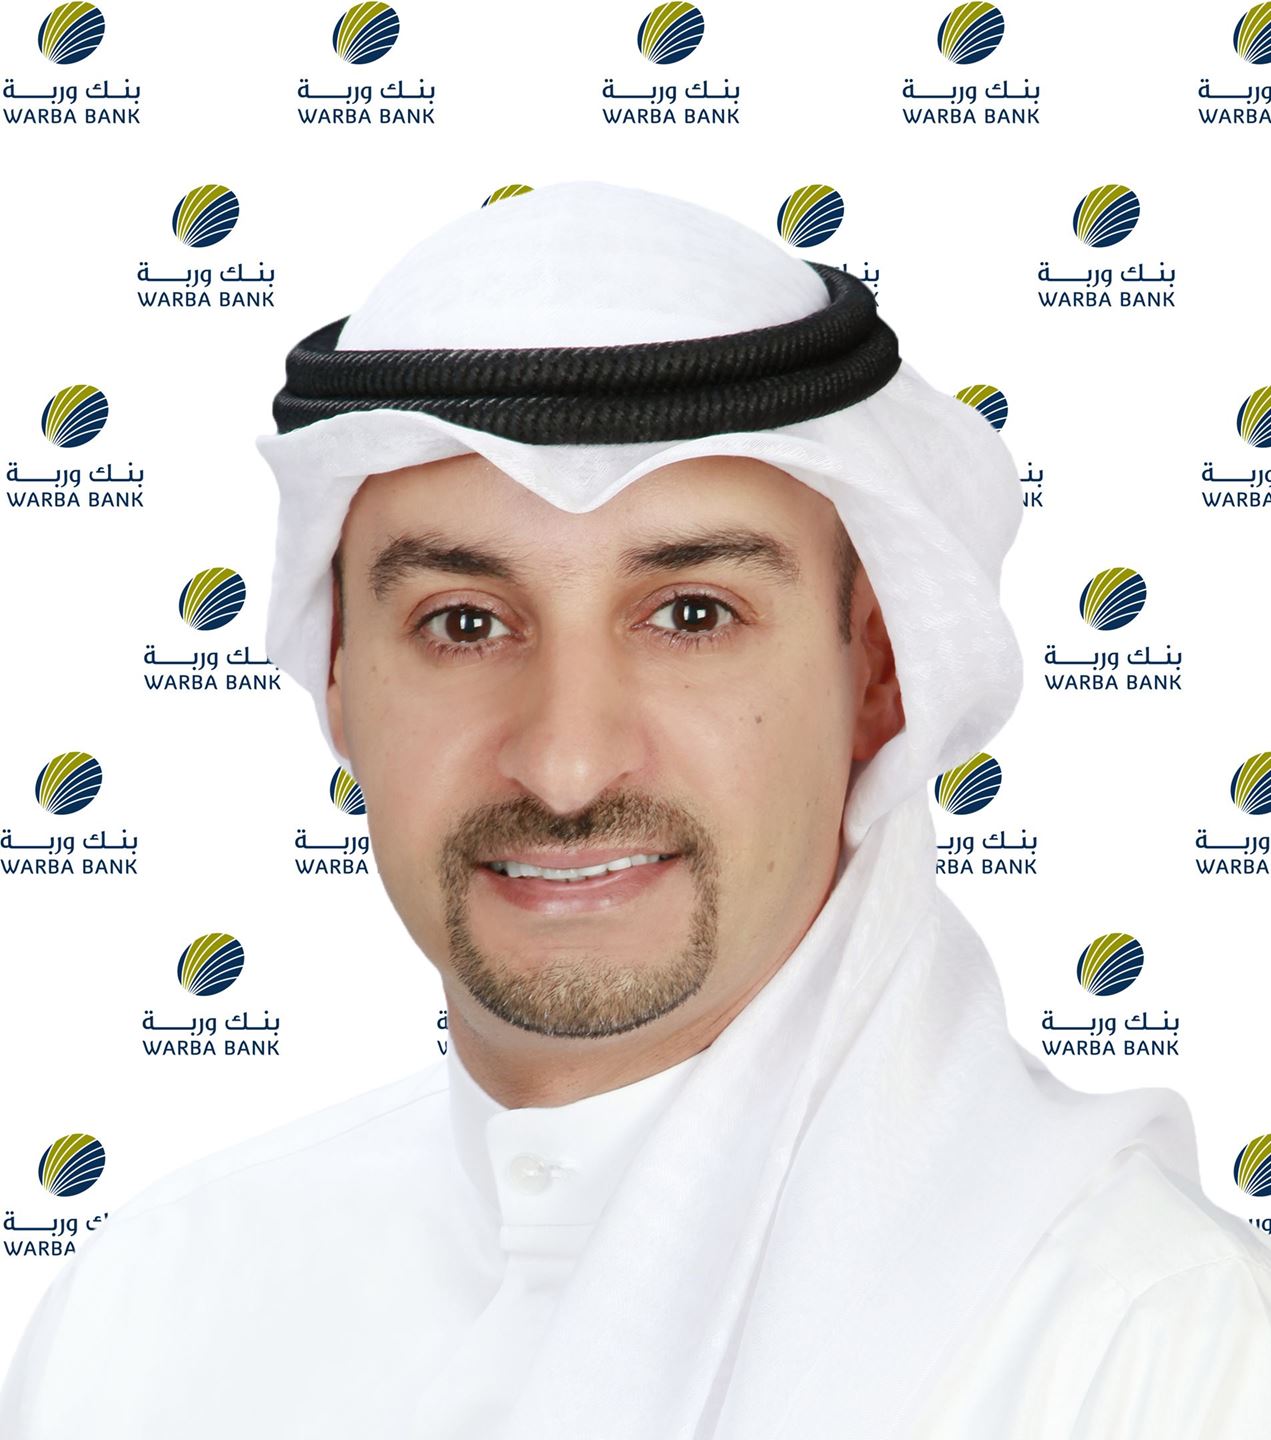 السيد أيمن سالم المطيري - المدير التنفيذي للتسويق والإتصال المؤسسي في بنك وربة